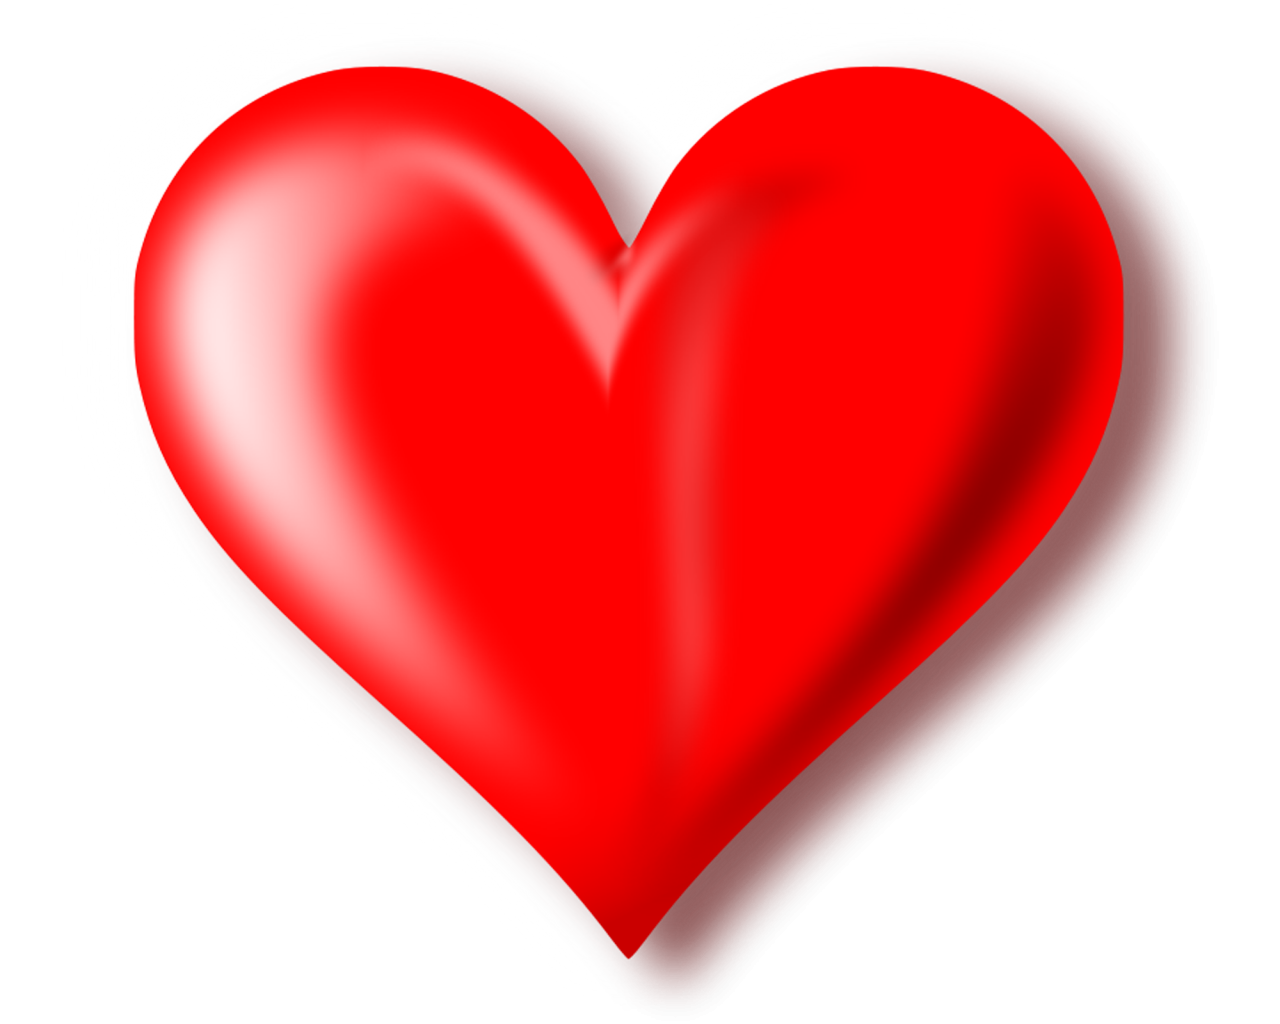 fonds d'écran png,cœur,rouge,amour,la saint valentin,cœur